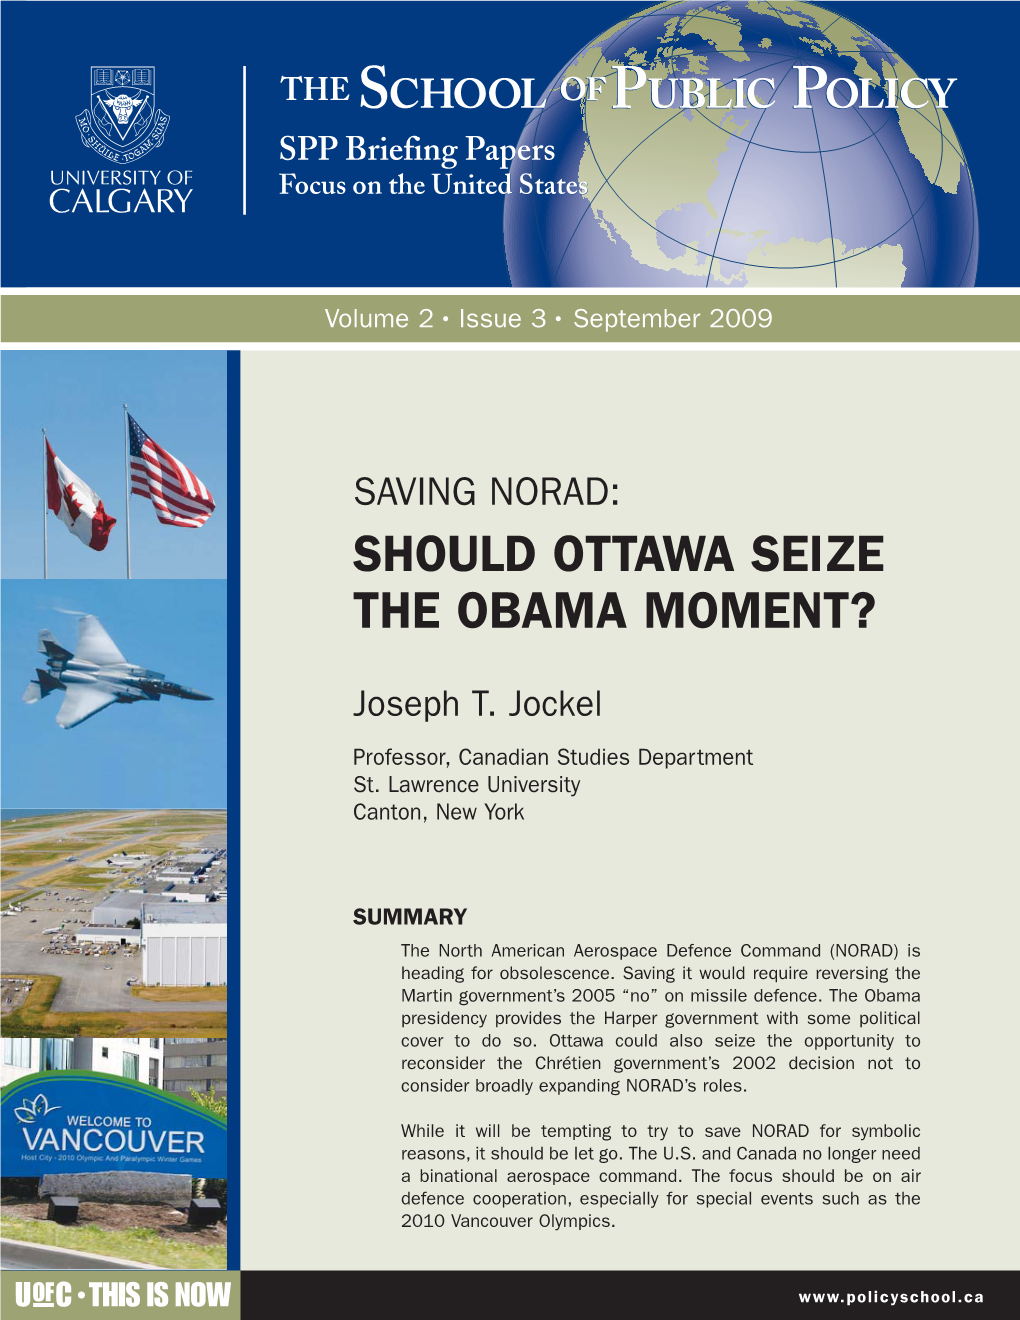 Should Ottawa Seize the Obama Moment?